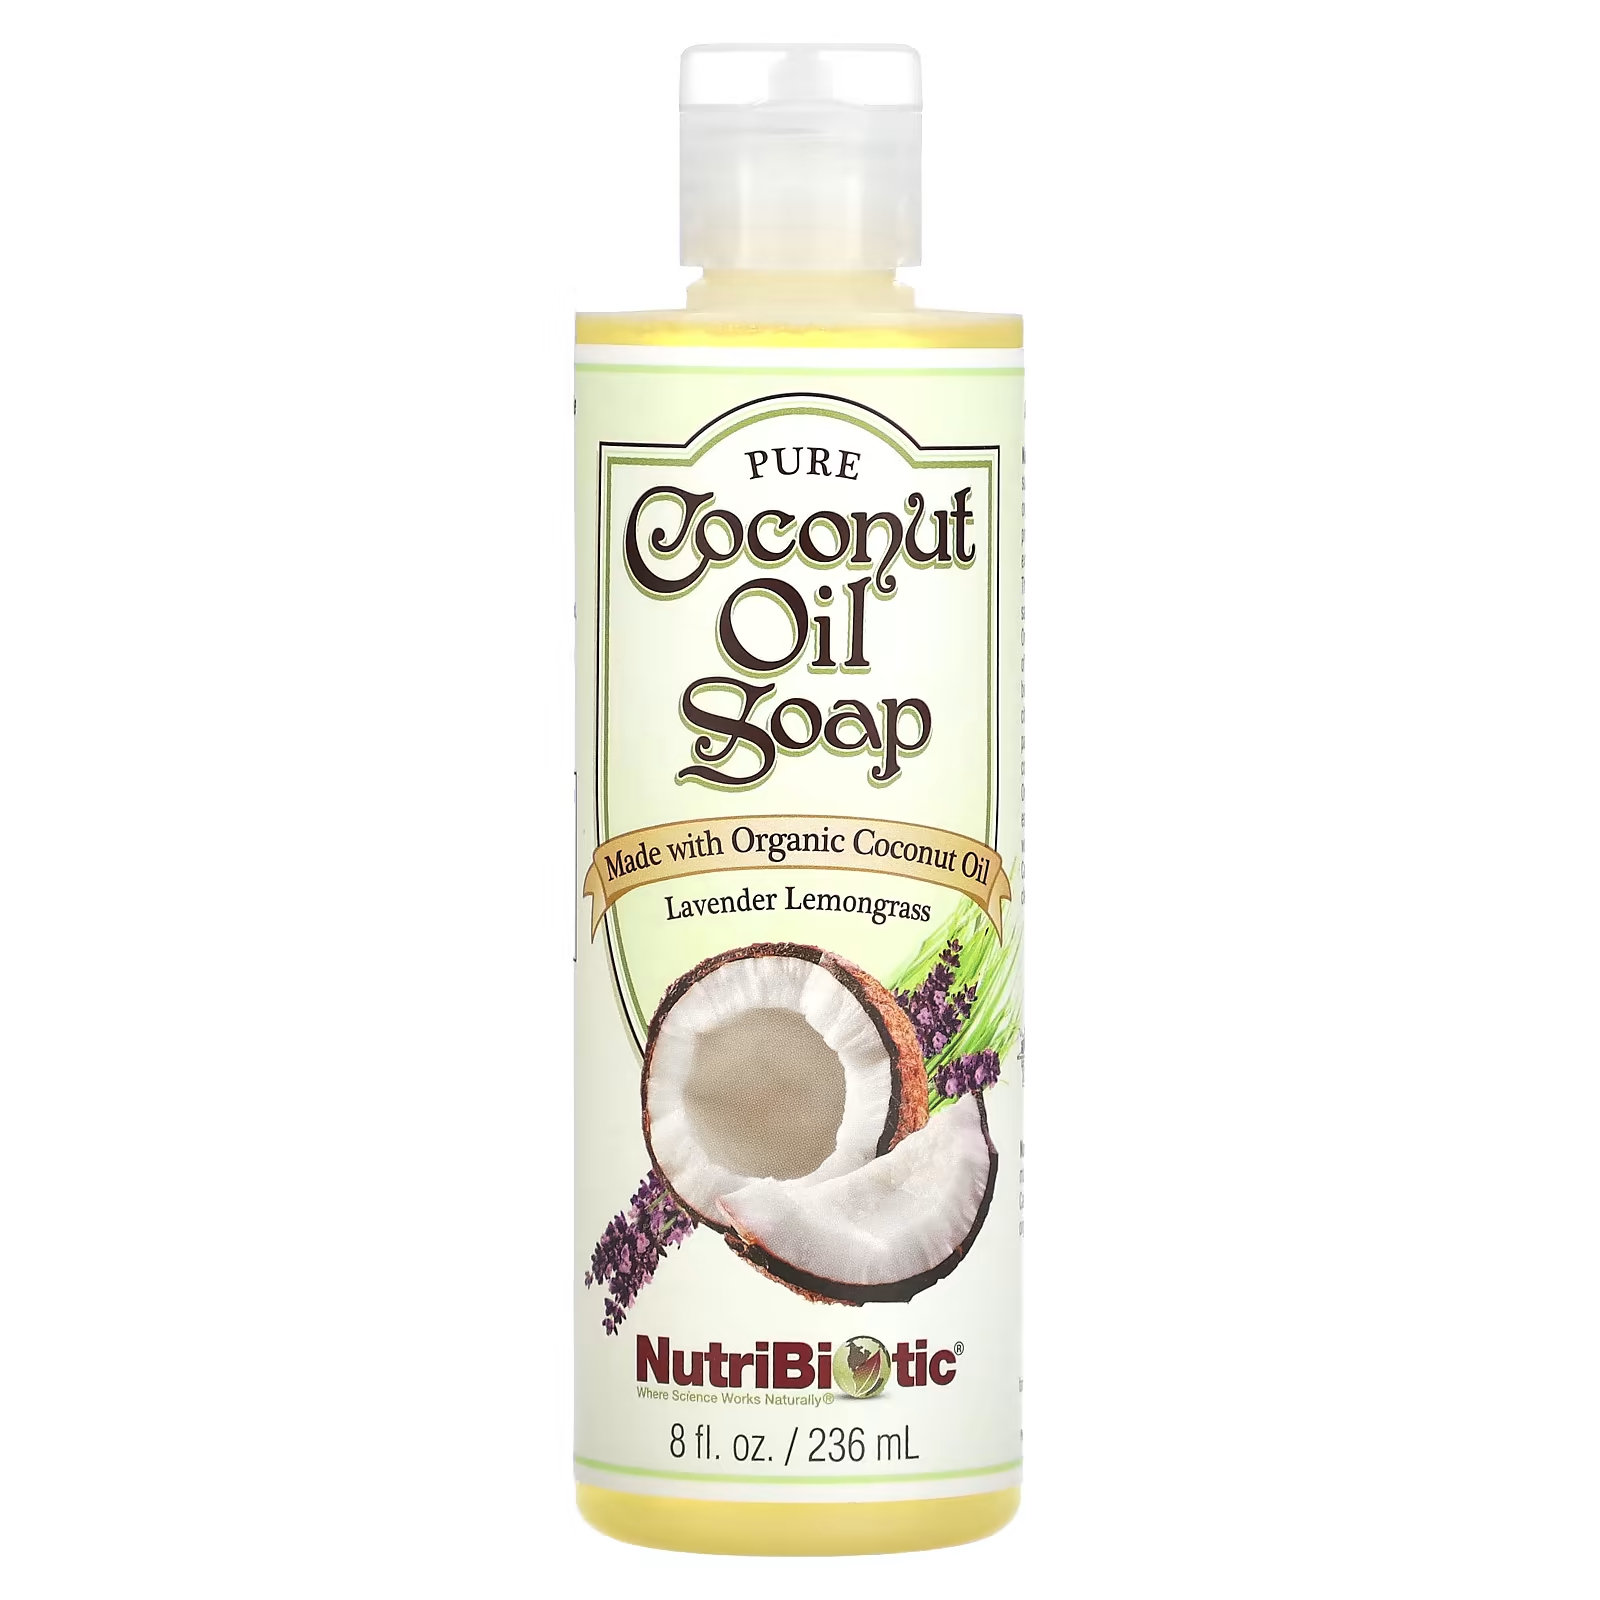 Мыло NutriBiotic с чистым кокосовым маслом, 236 мл fresh line caribbean coconut dry body oil with organic macadamia oil